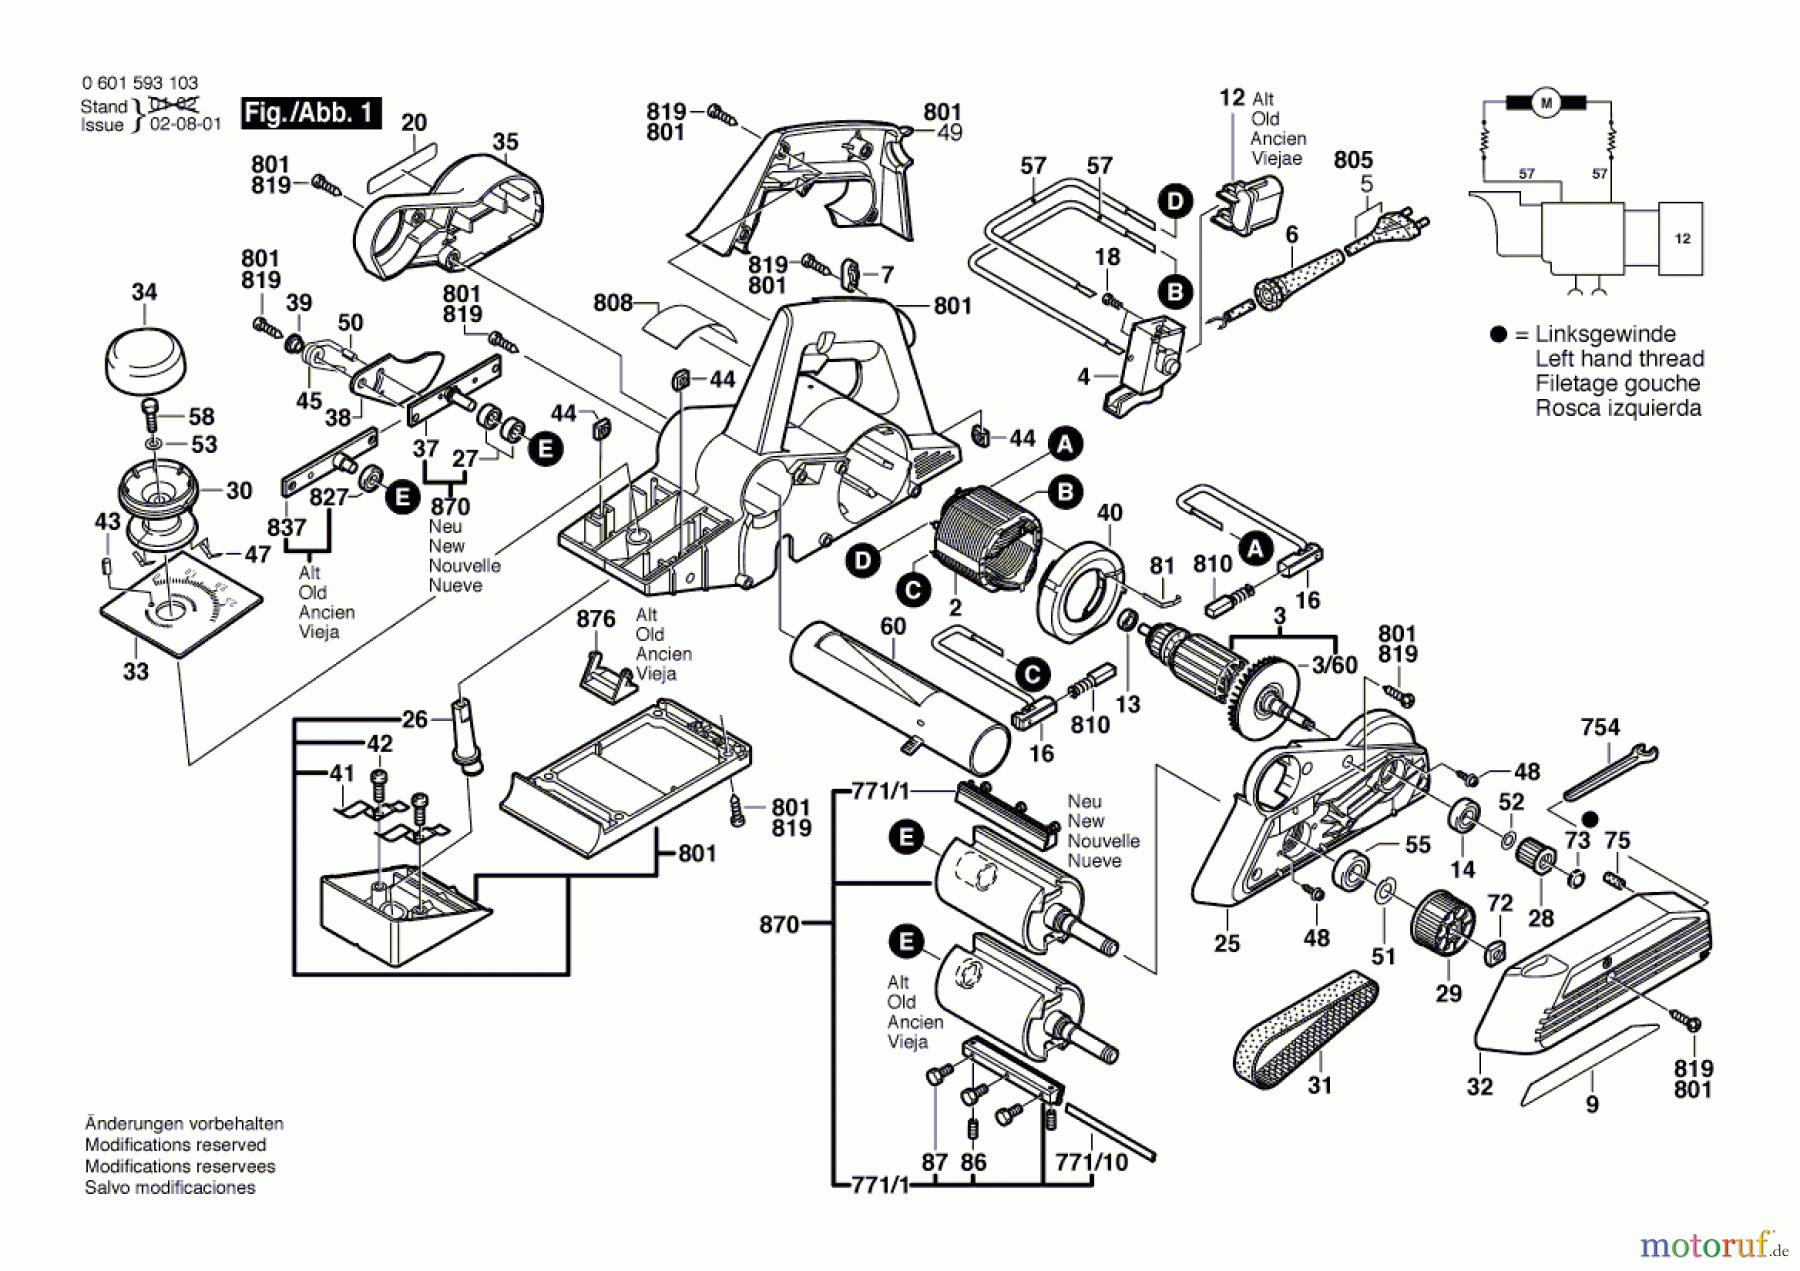  Bosch Werkzeug Handhobel GHO 31-82 Seite 1